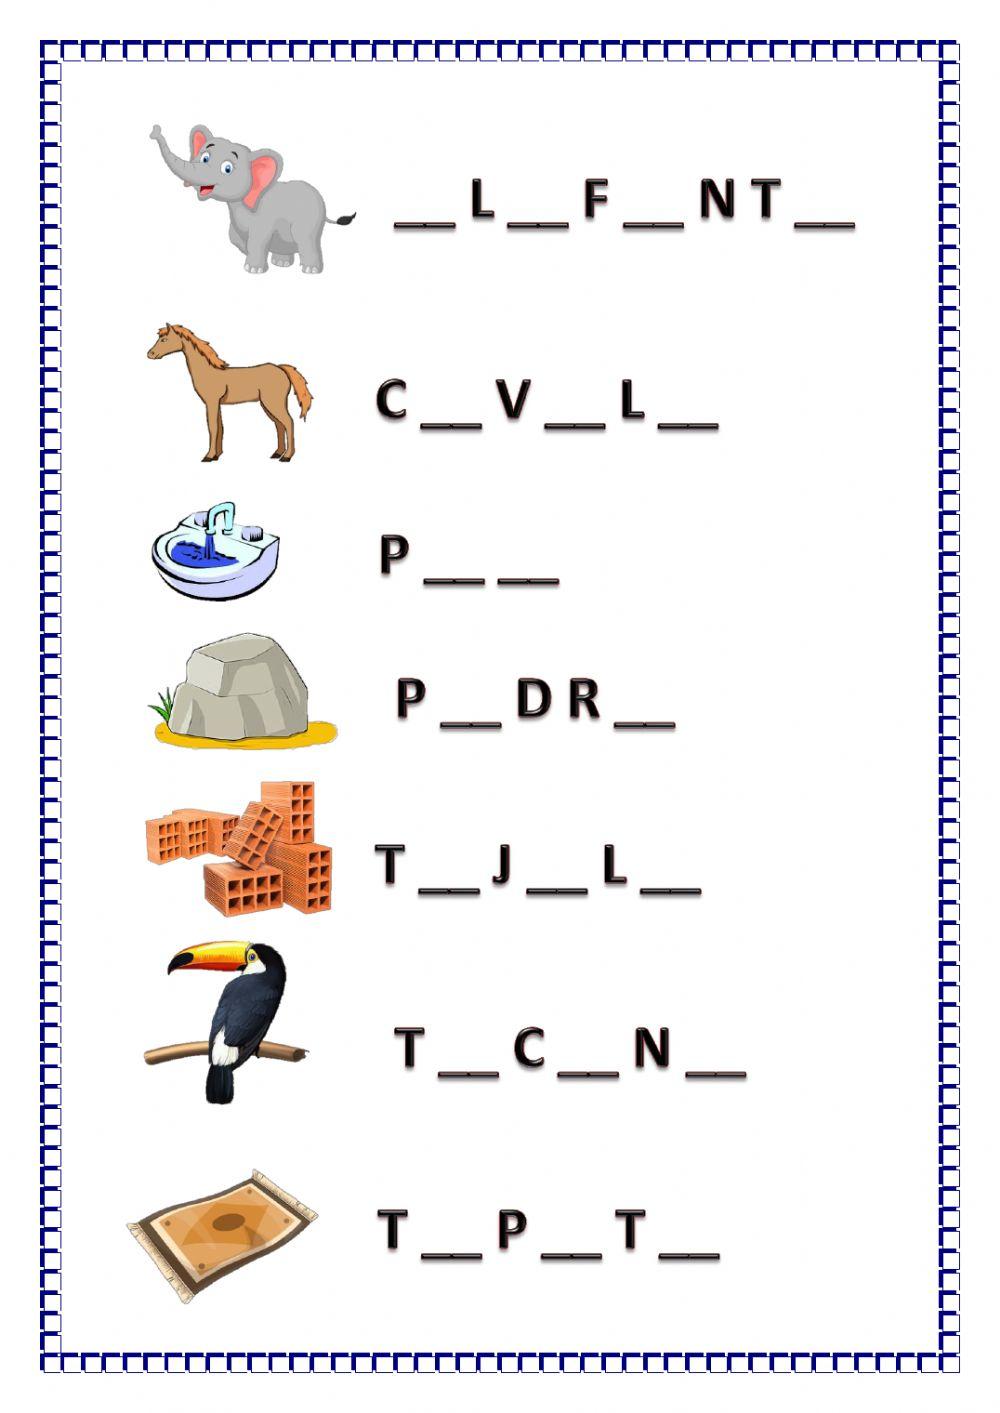 Complete as palavras usando as vogais.